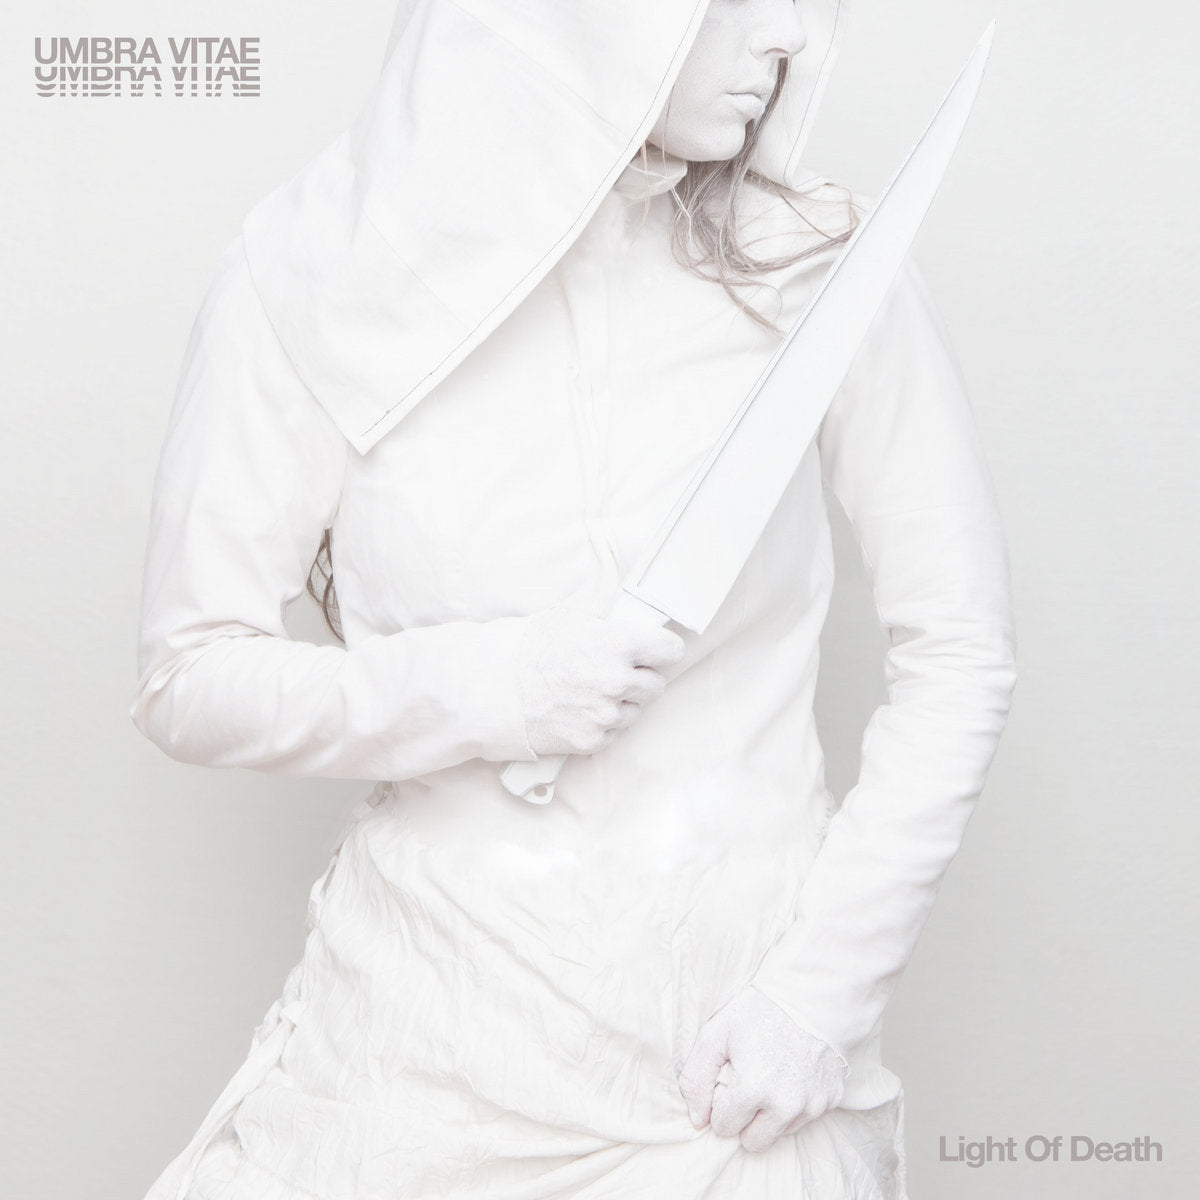 UMBRA VITAE "Light Of Death" LP